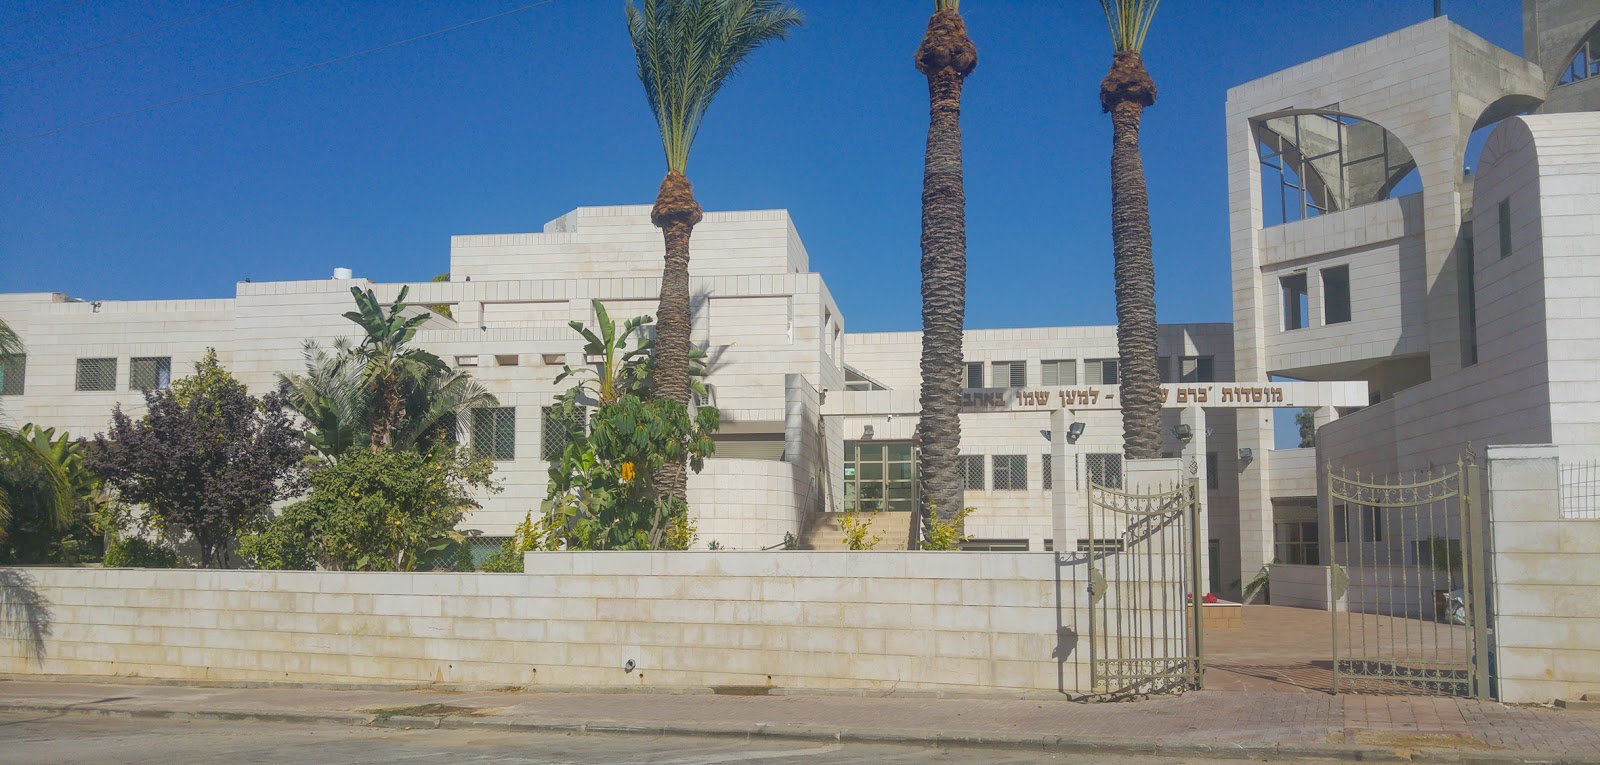 בניין המוסדות של הרב מויאל. צילום: פותחים שבוע קרית גת